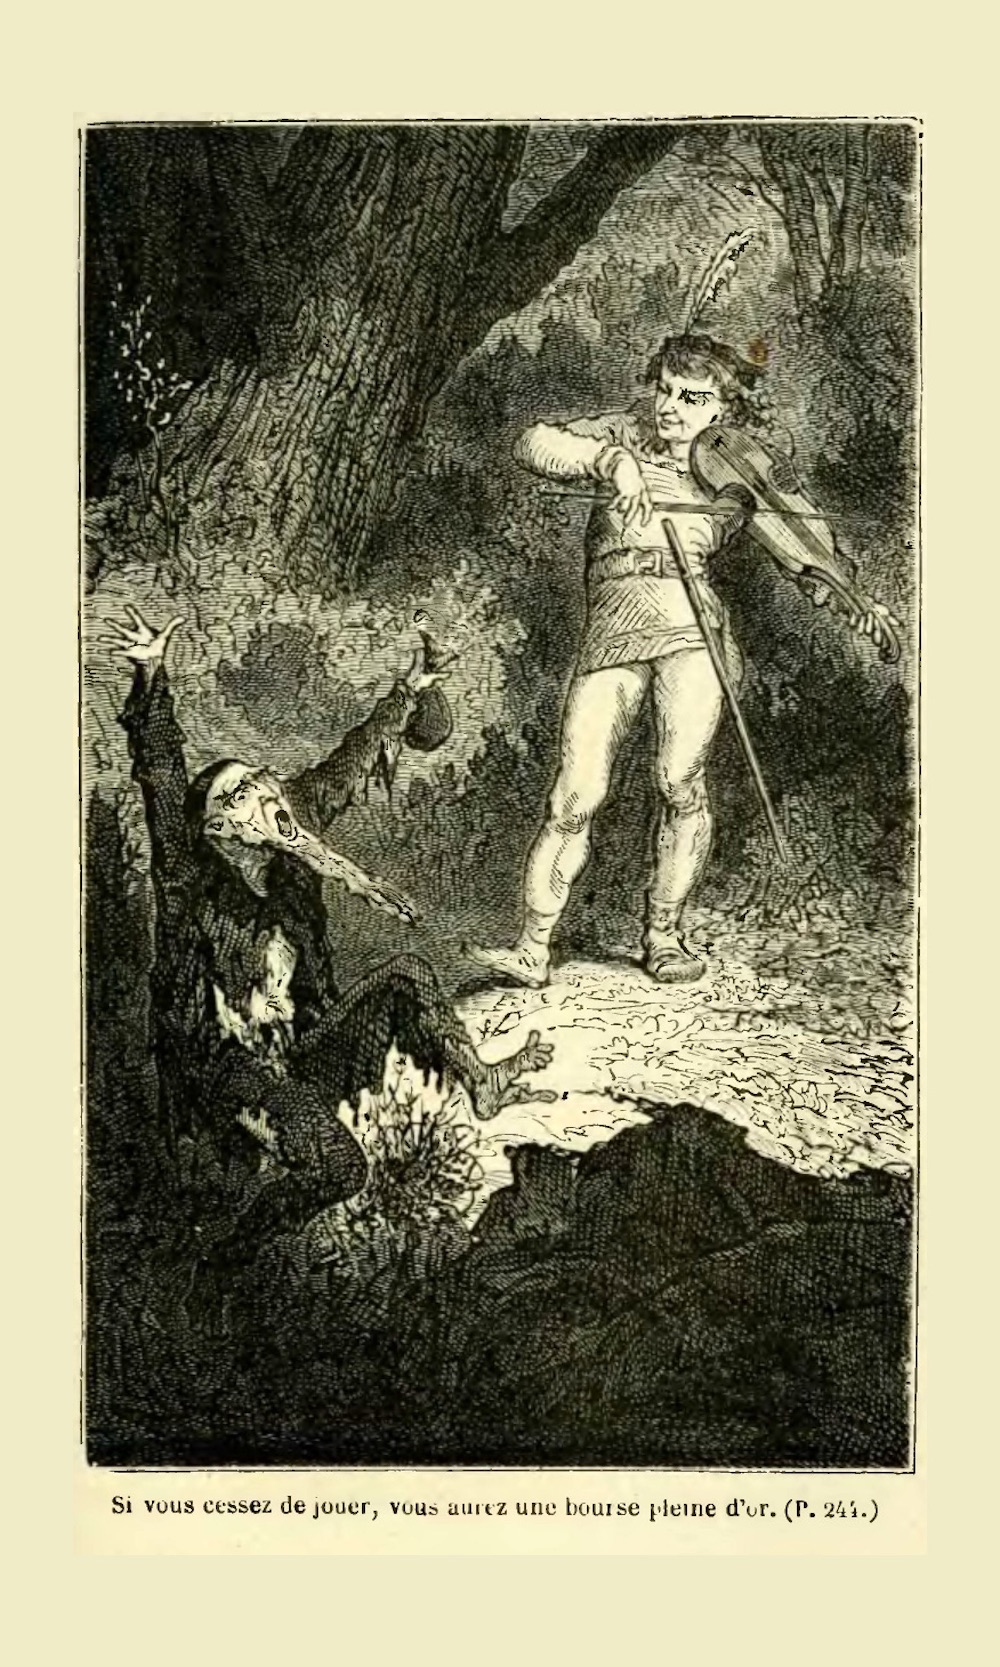 Illustration du conte des Frères Grimm : Le juif dans les épines.